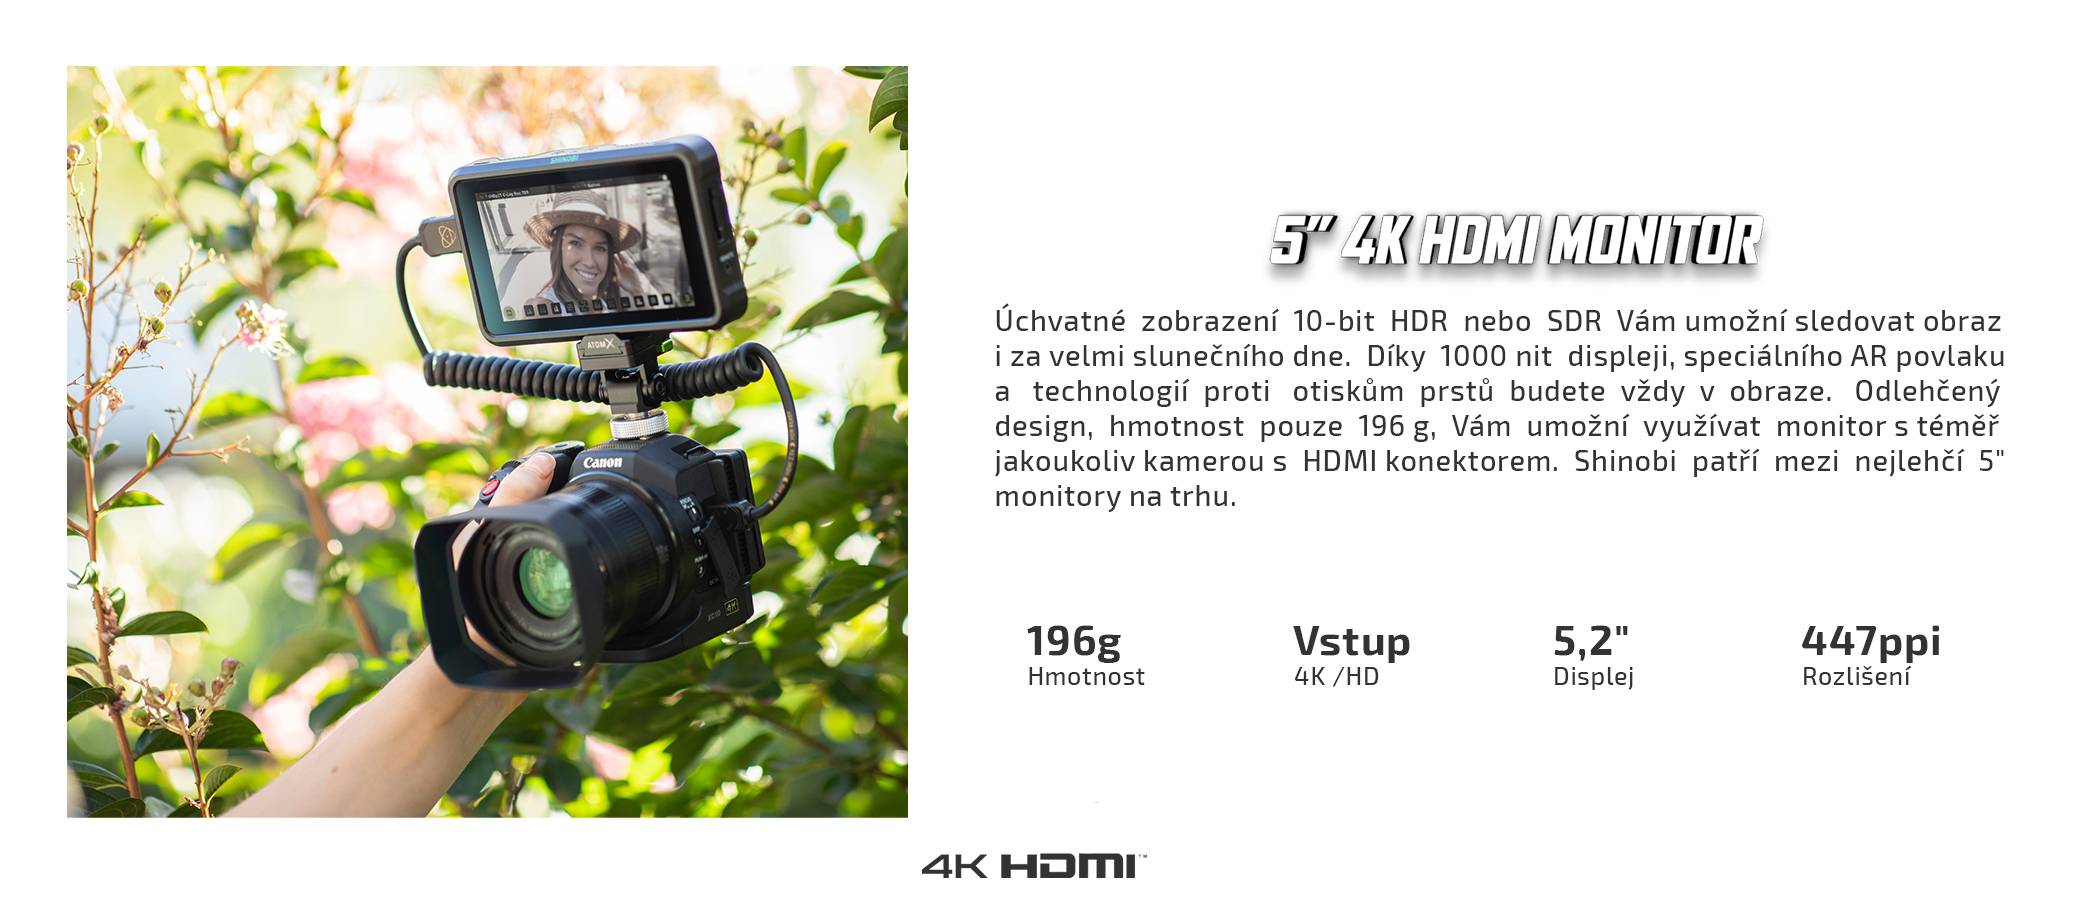 film-technika-atomos-shinobi-hdmi-5-inch-náhledový-monitor_1